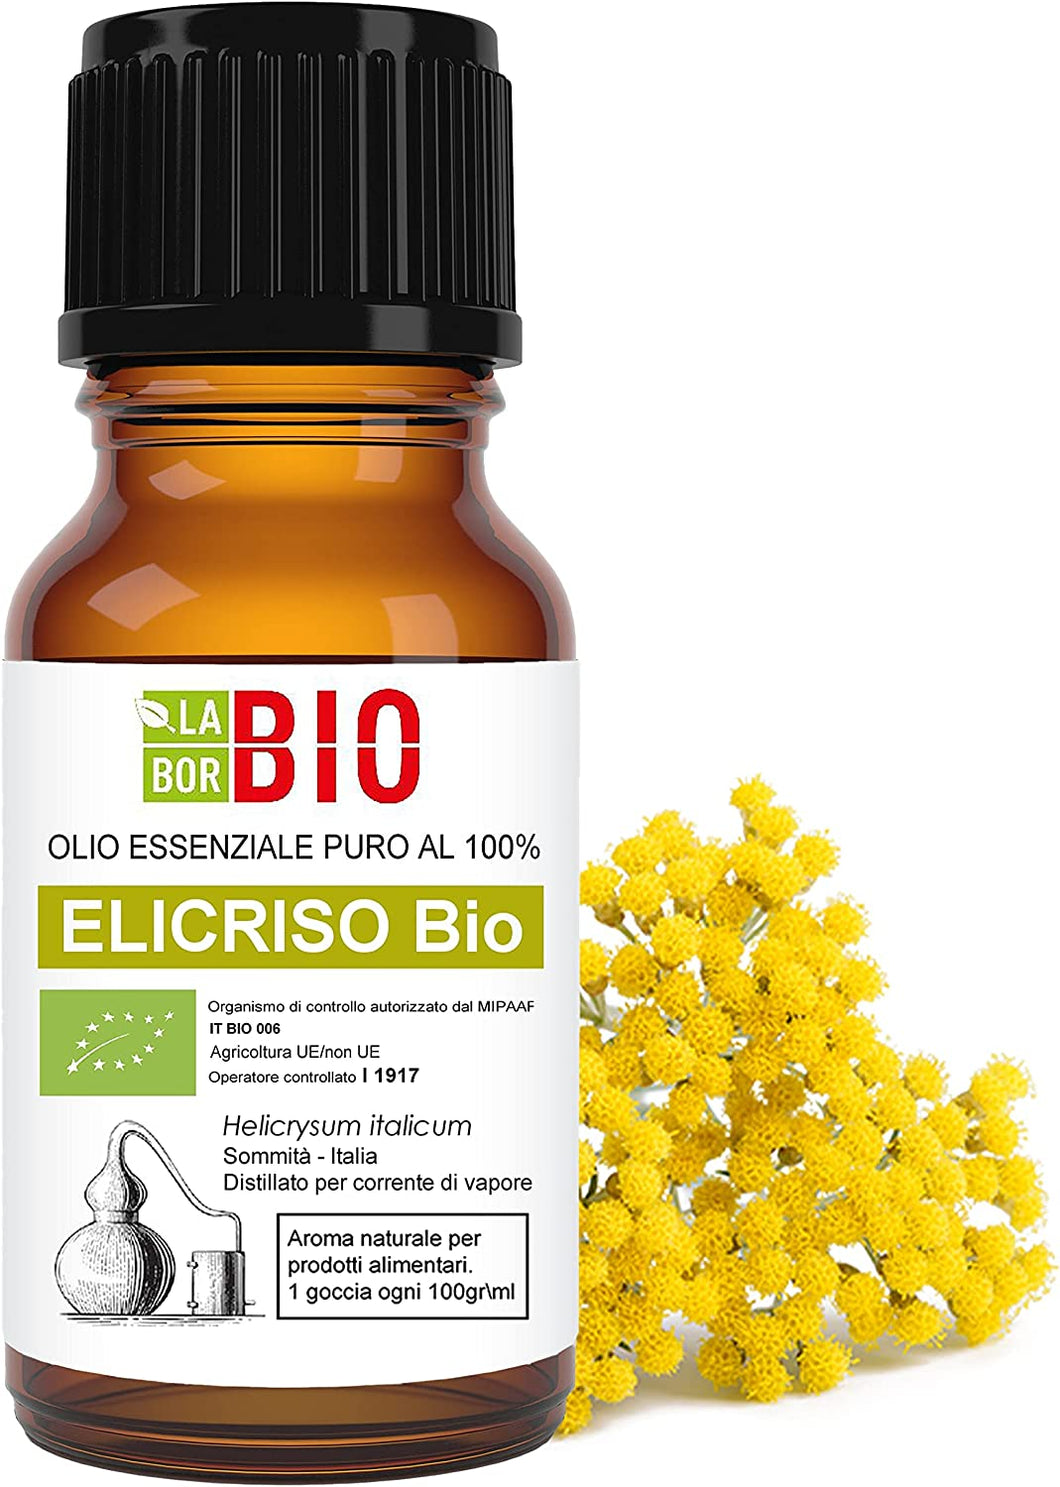 Olio essenziale Lavanda puro Bio 30 ml - Laborbio